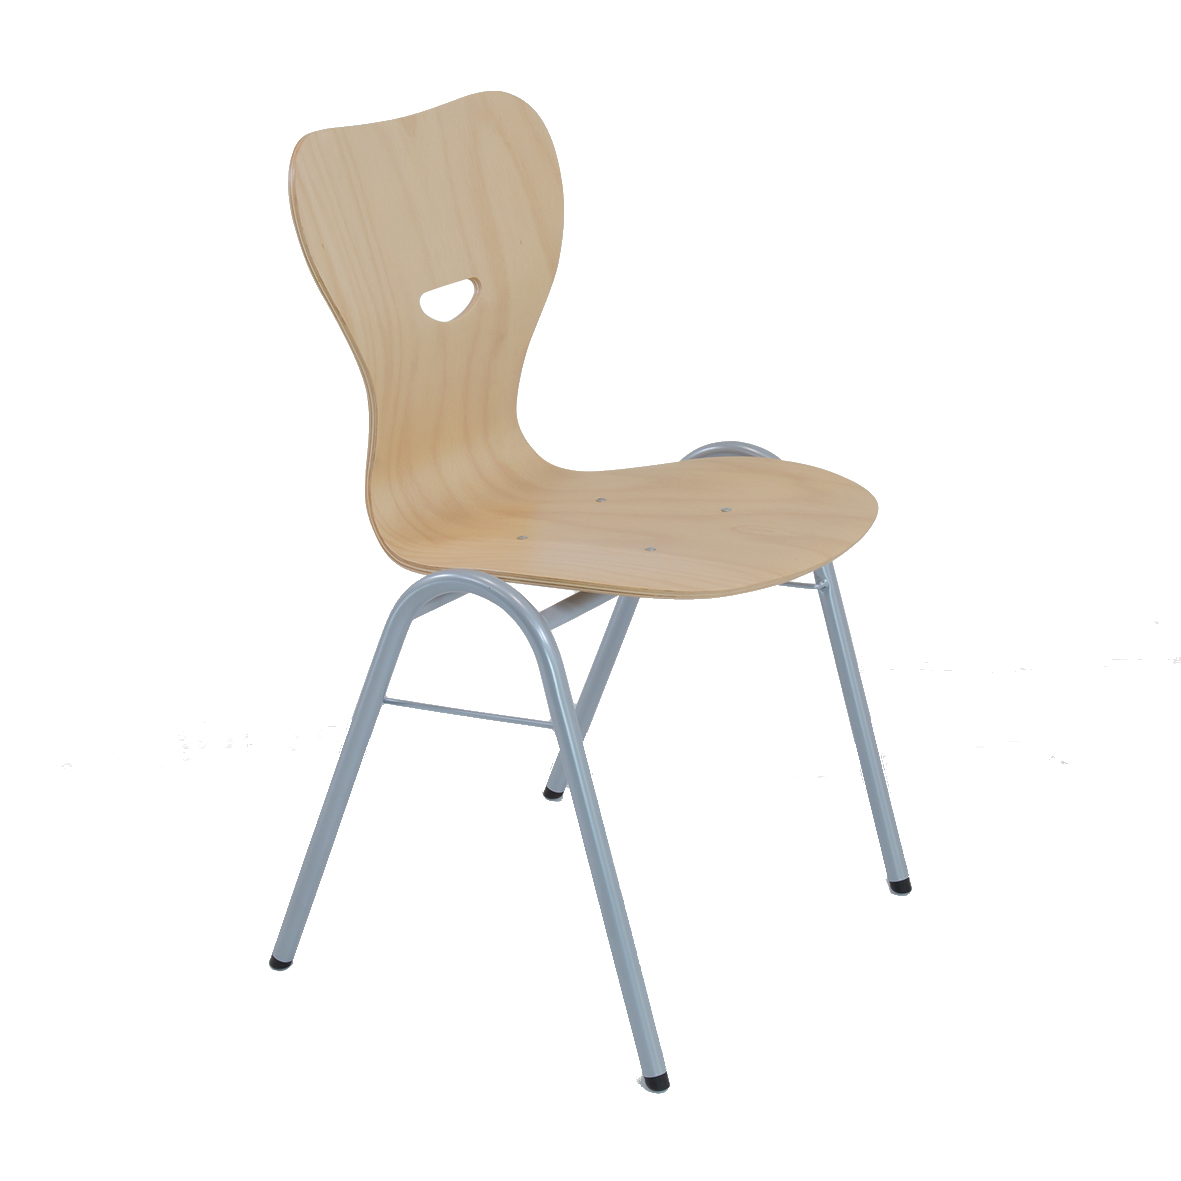 Vierbeinstuhl mit Holzschale, stapelbar (max. 5 Stühle), Sitzhöhe ca. 450 mm